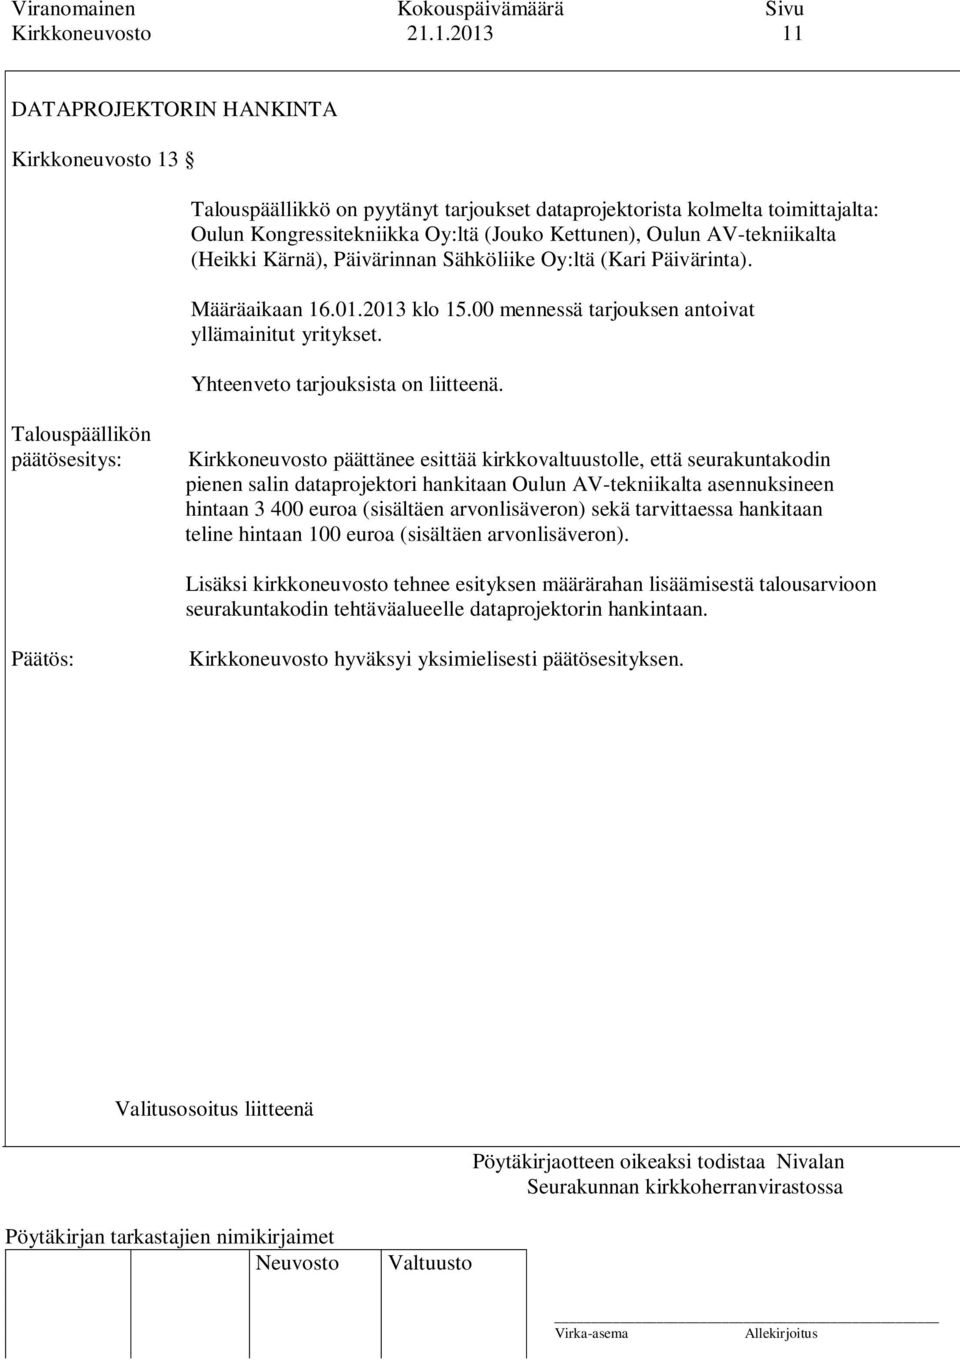 AV-tekniikalta (Heikki Kärnä), Päivärinnan Sähköliike Oy:ltä (Kari Päivärinta). Määräaikaan 16.01.2013 klo 15.00 mennessä tarjouksen antoivat yllämainitut yritykset.